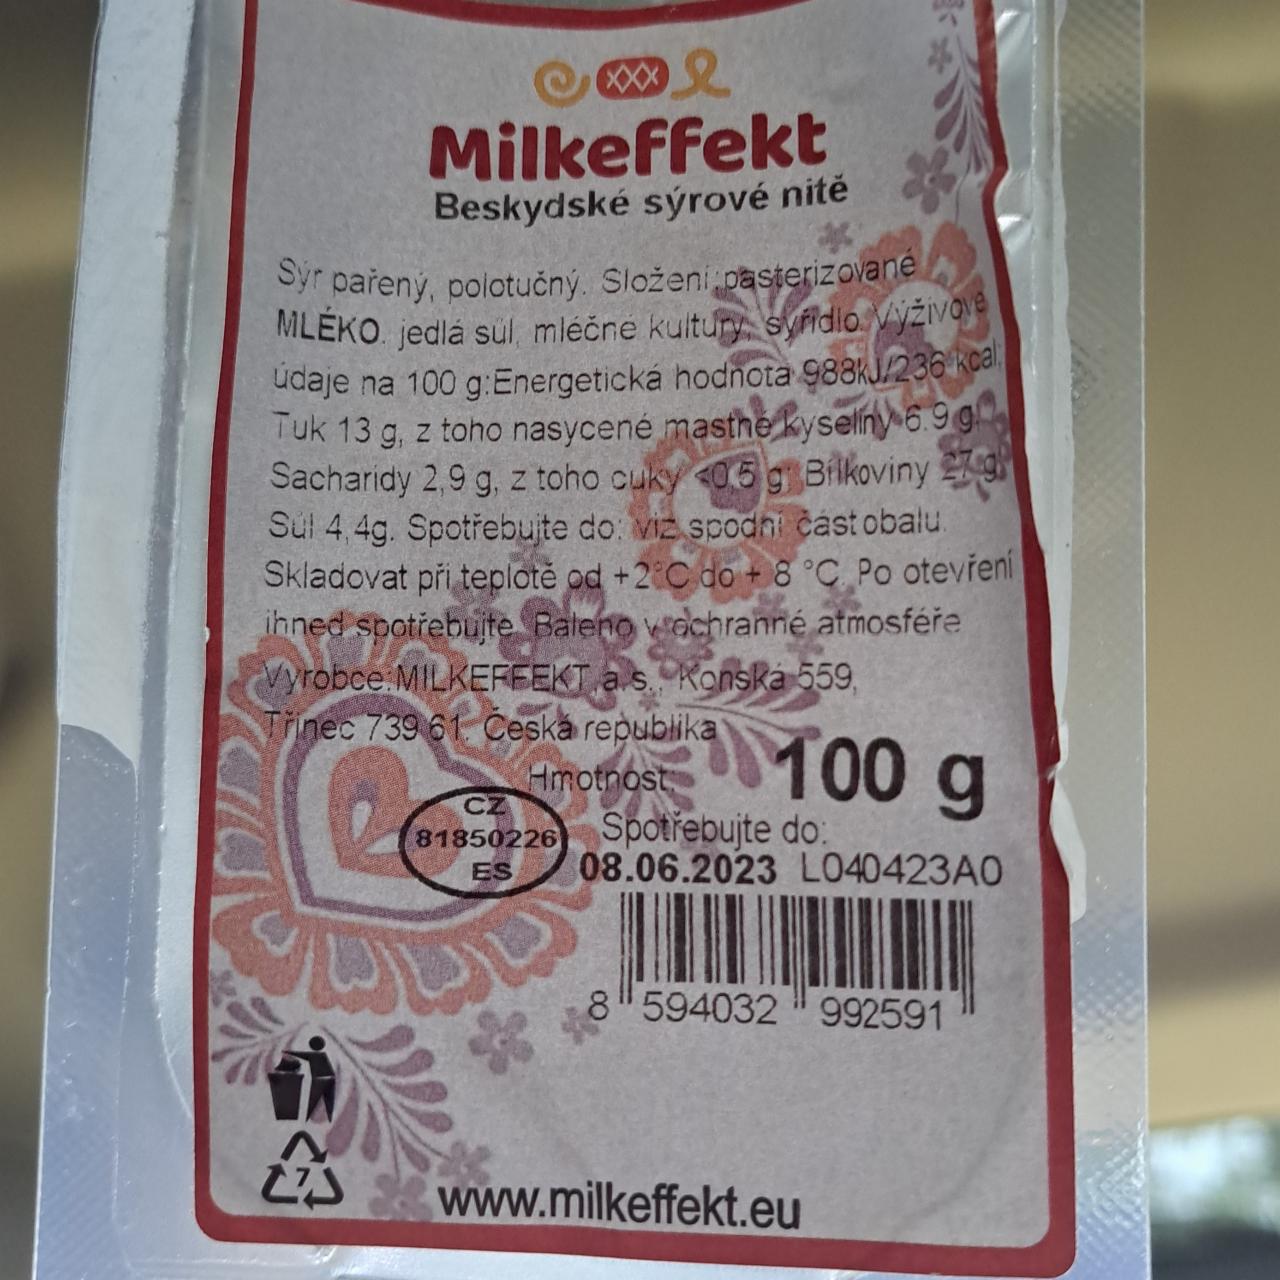 Fotografie - Beskydské sýrové nitě Milkeffekt